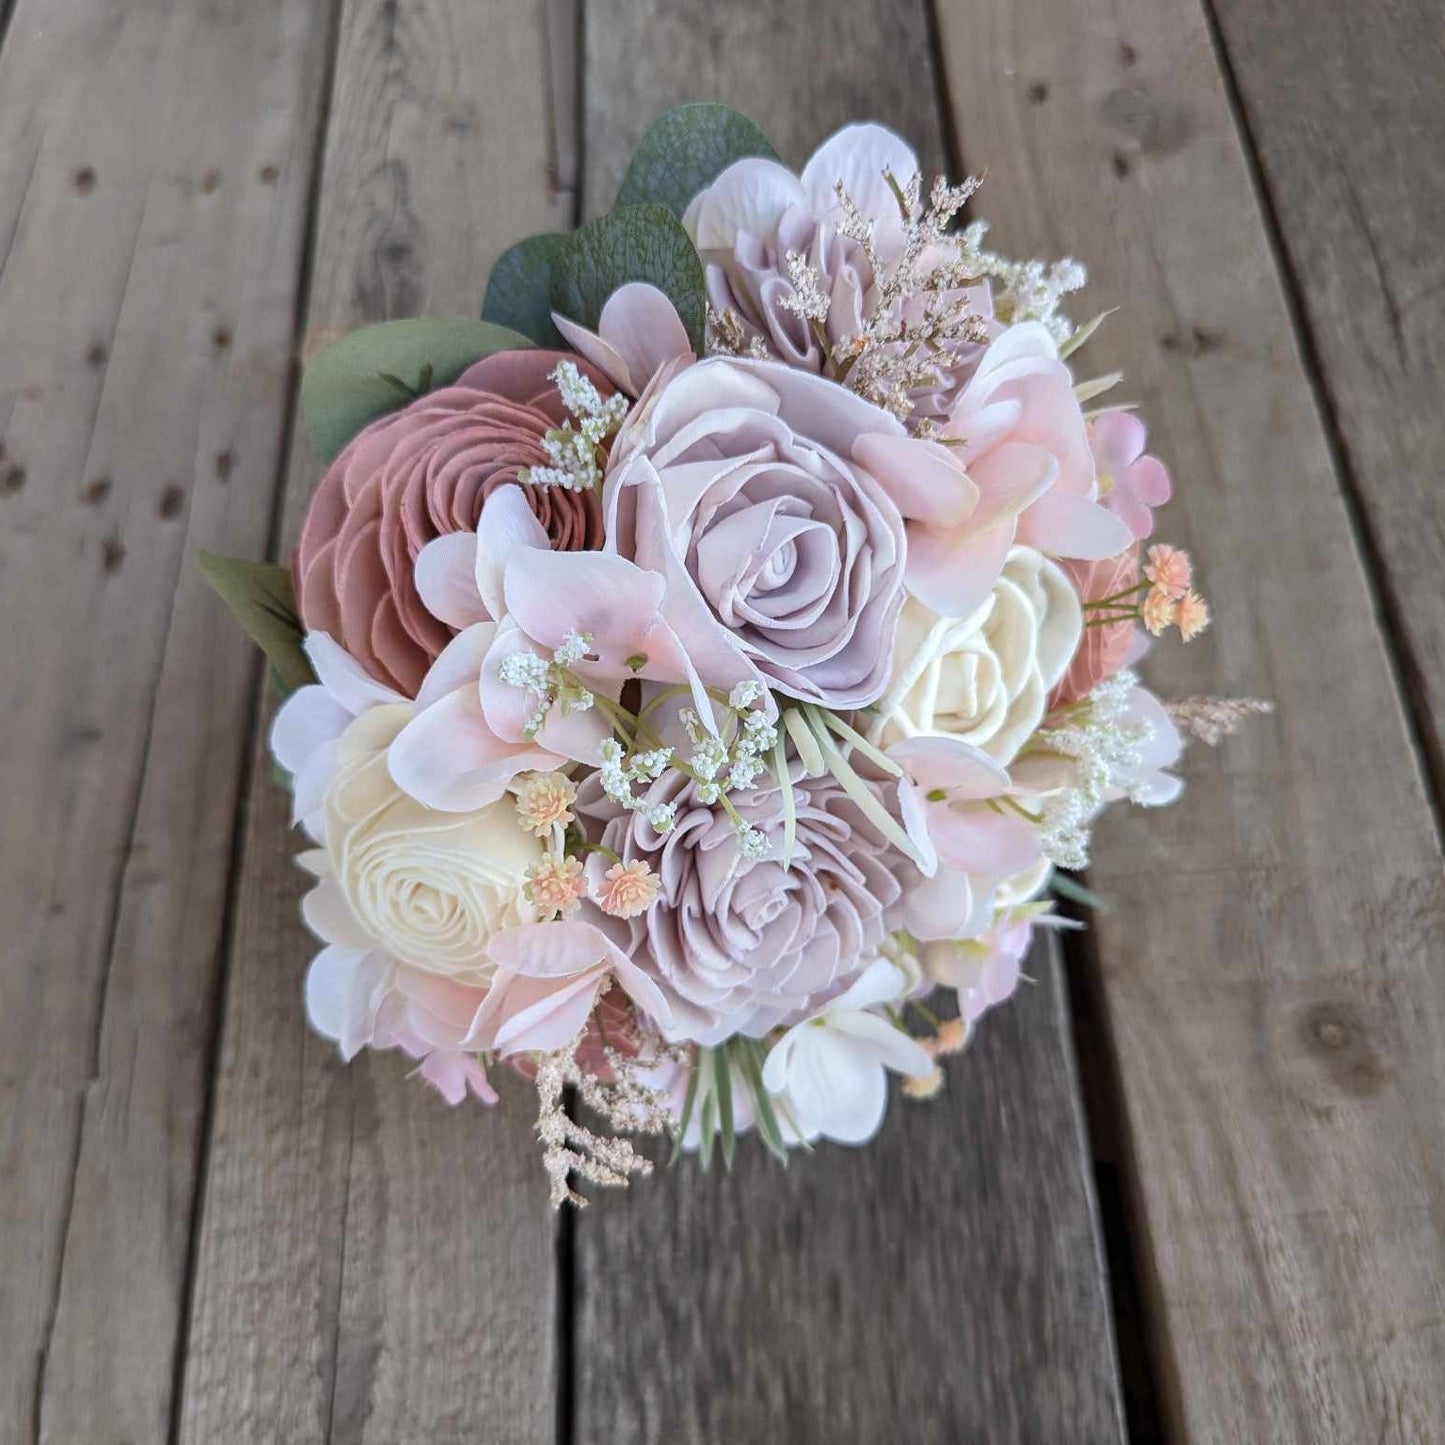 Lavender & Blush Sola Wood Flower Bouquet, Wedding Elopement Bouquet, Destination Bridal Bouquet, Wooden Bridesmaid Flowers